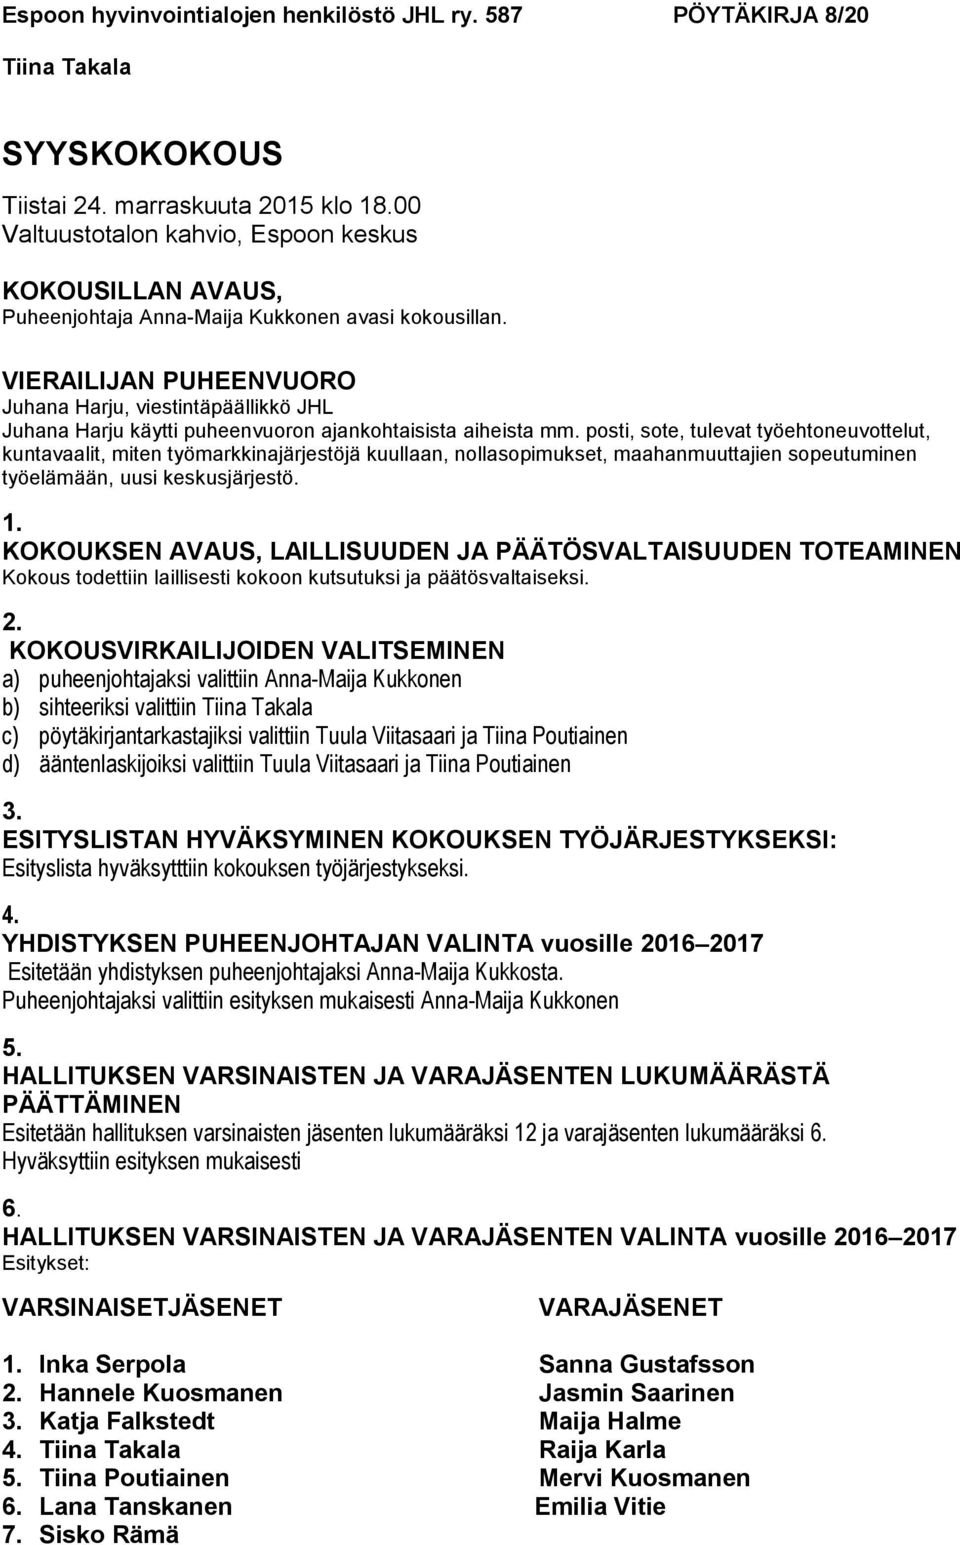 Espoon hyvinvointialojen henkilöstö JHL ry. 587 PÖYTÄKIRJA 8/20 - PDF Free  Download